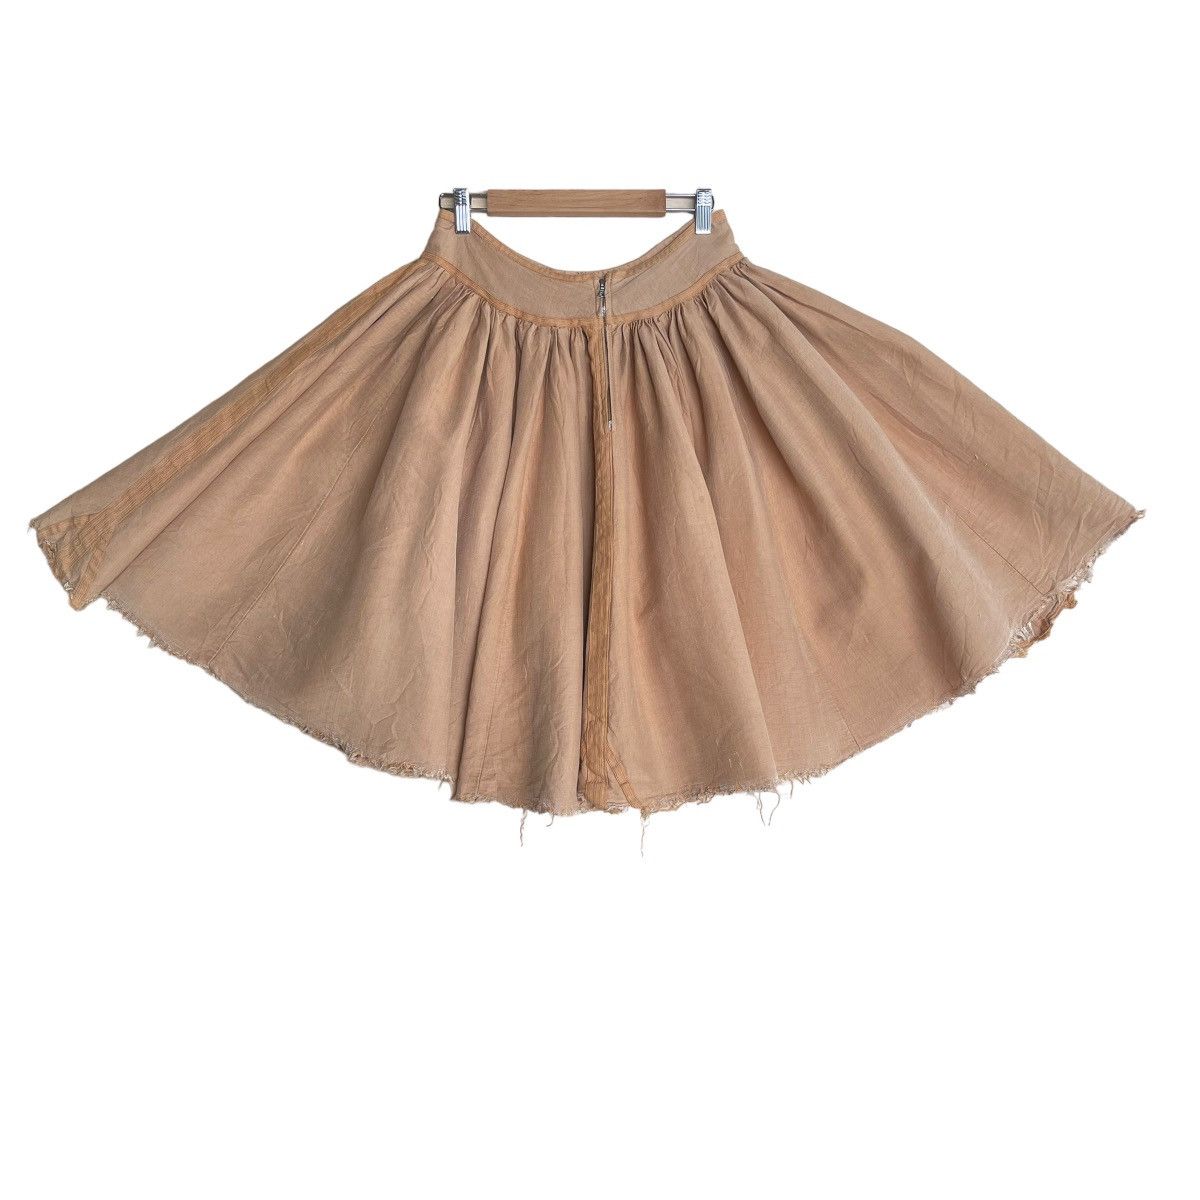 ⚡️QUICK SALE⚡️Dries Van Noten Distressed Skirt - 1